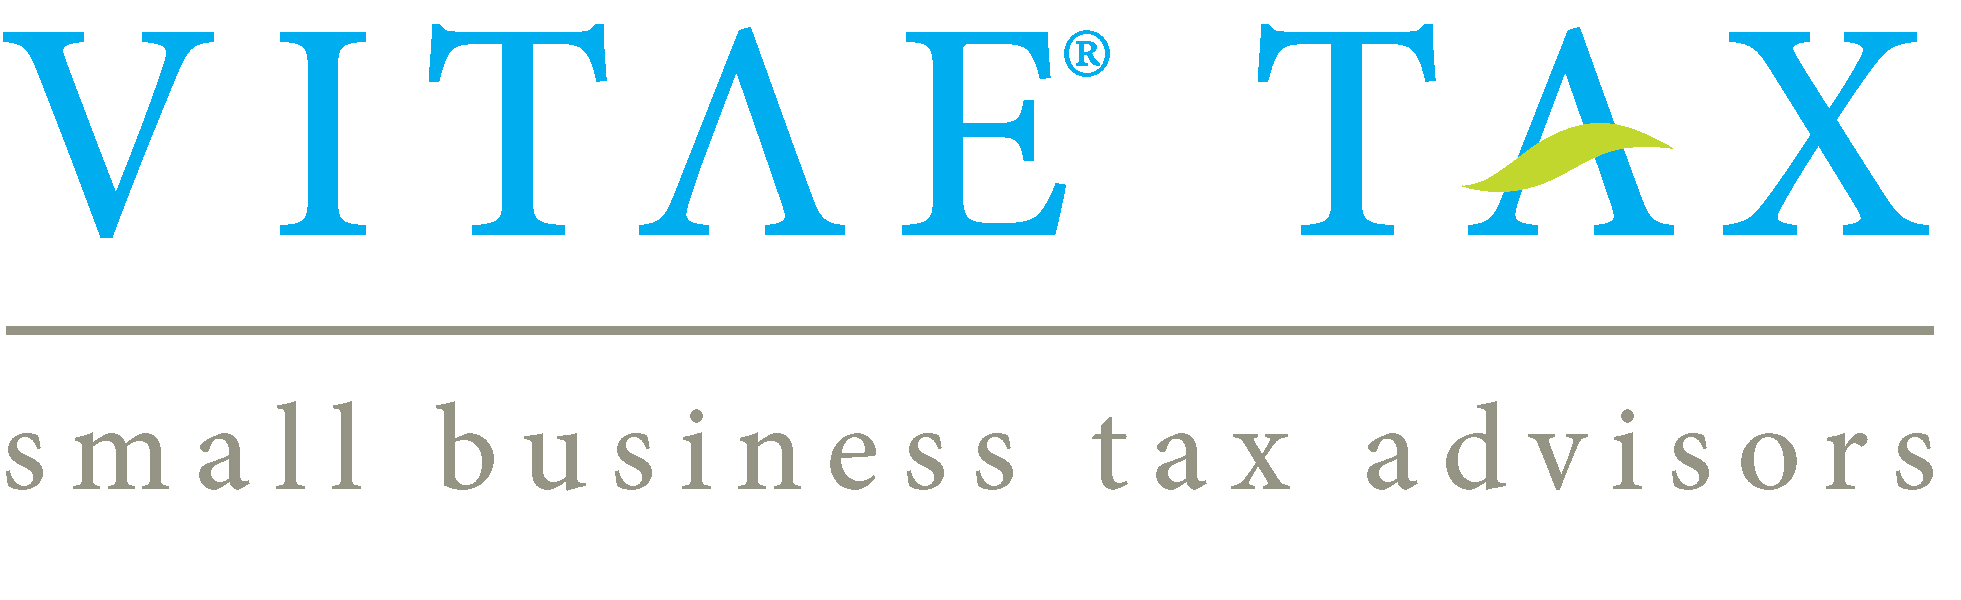 Vitae Tax